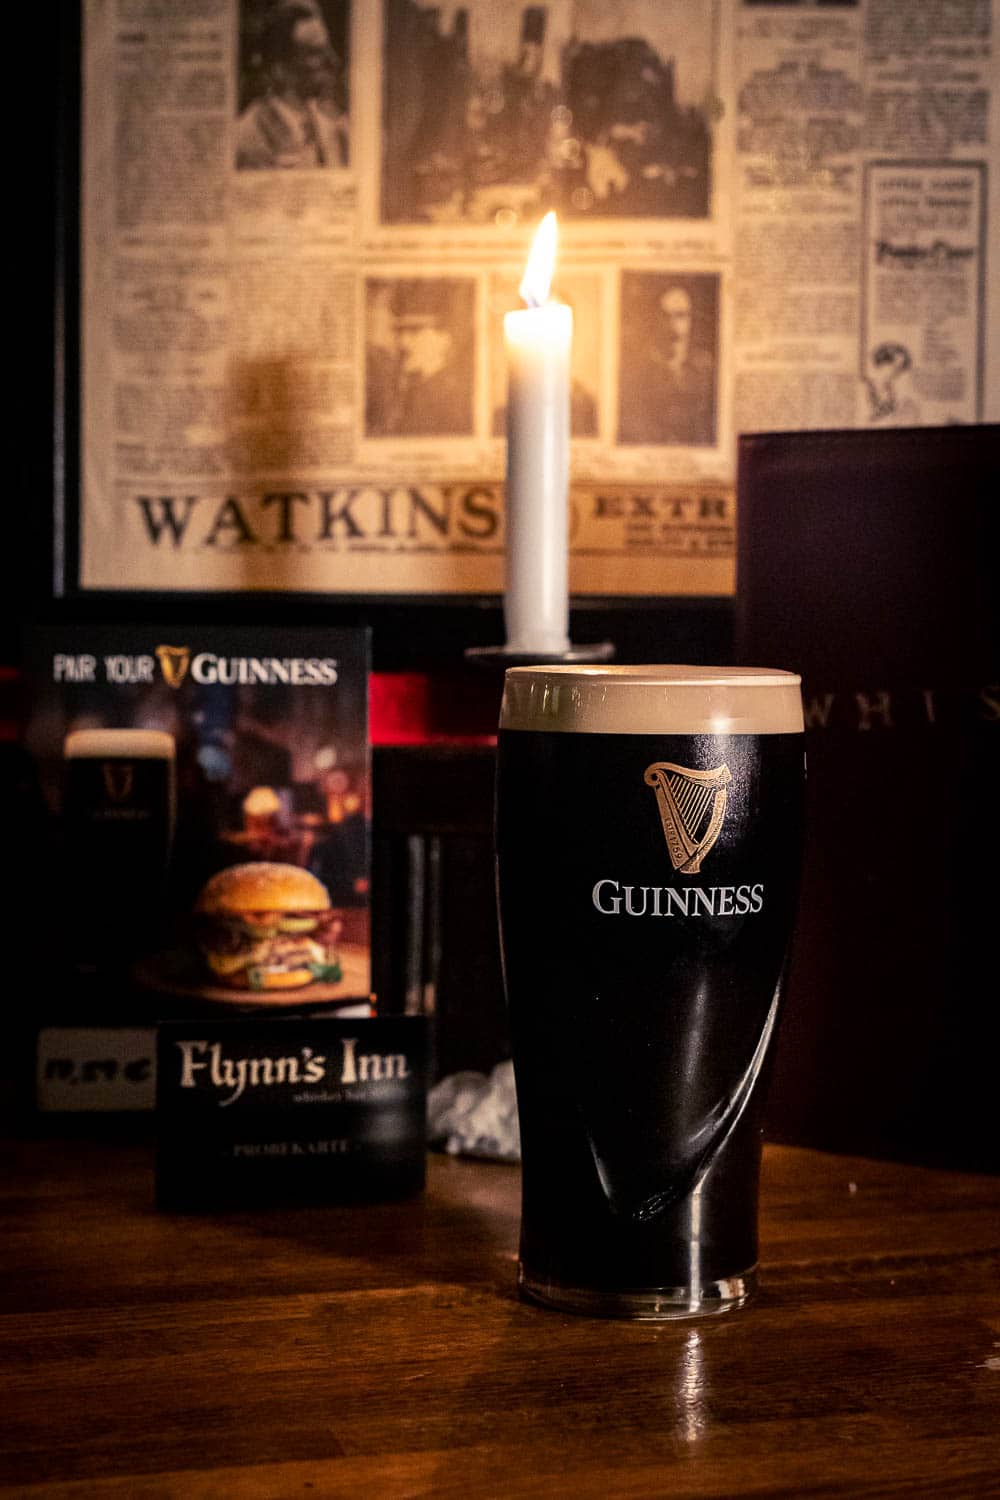 Flynns-Inn-Irish-Whiskey-Pub-Bonn-Altstadt-Guinness-Pint